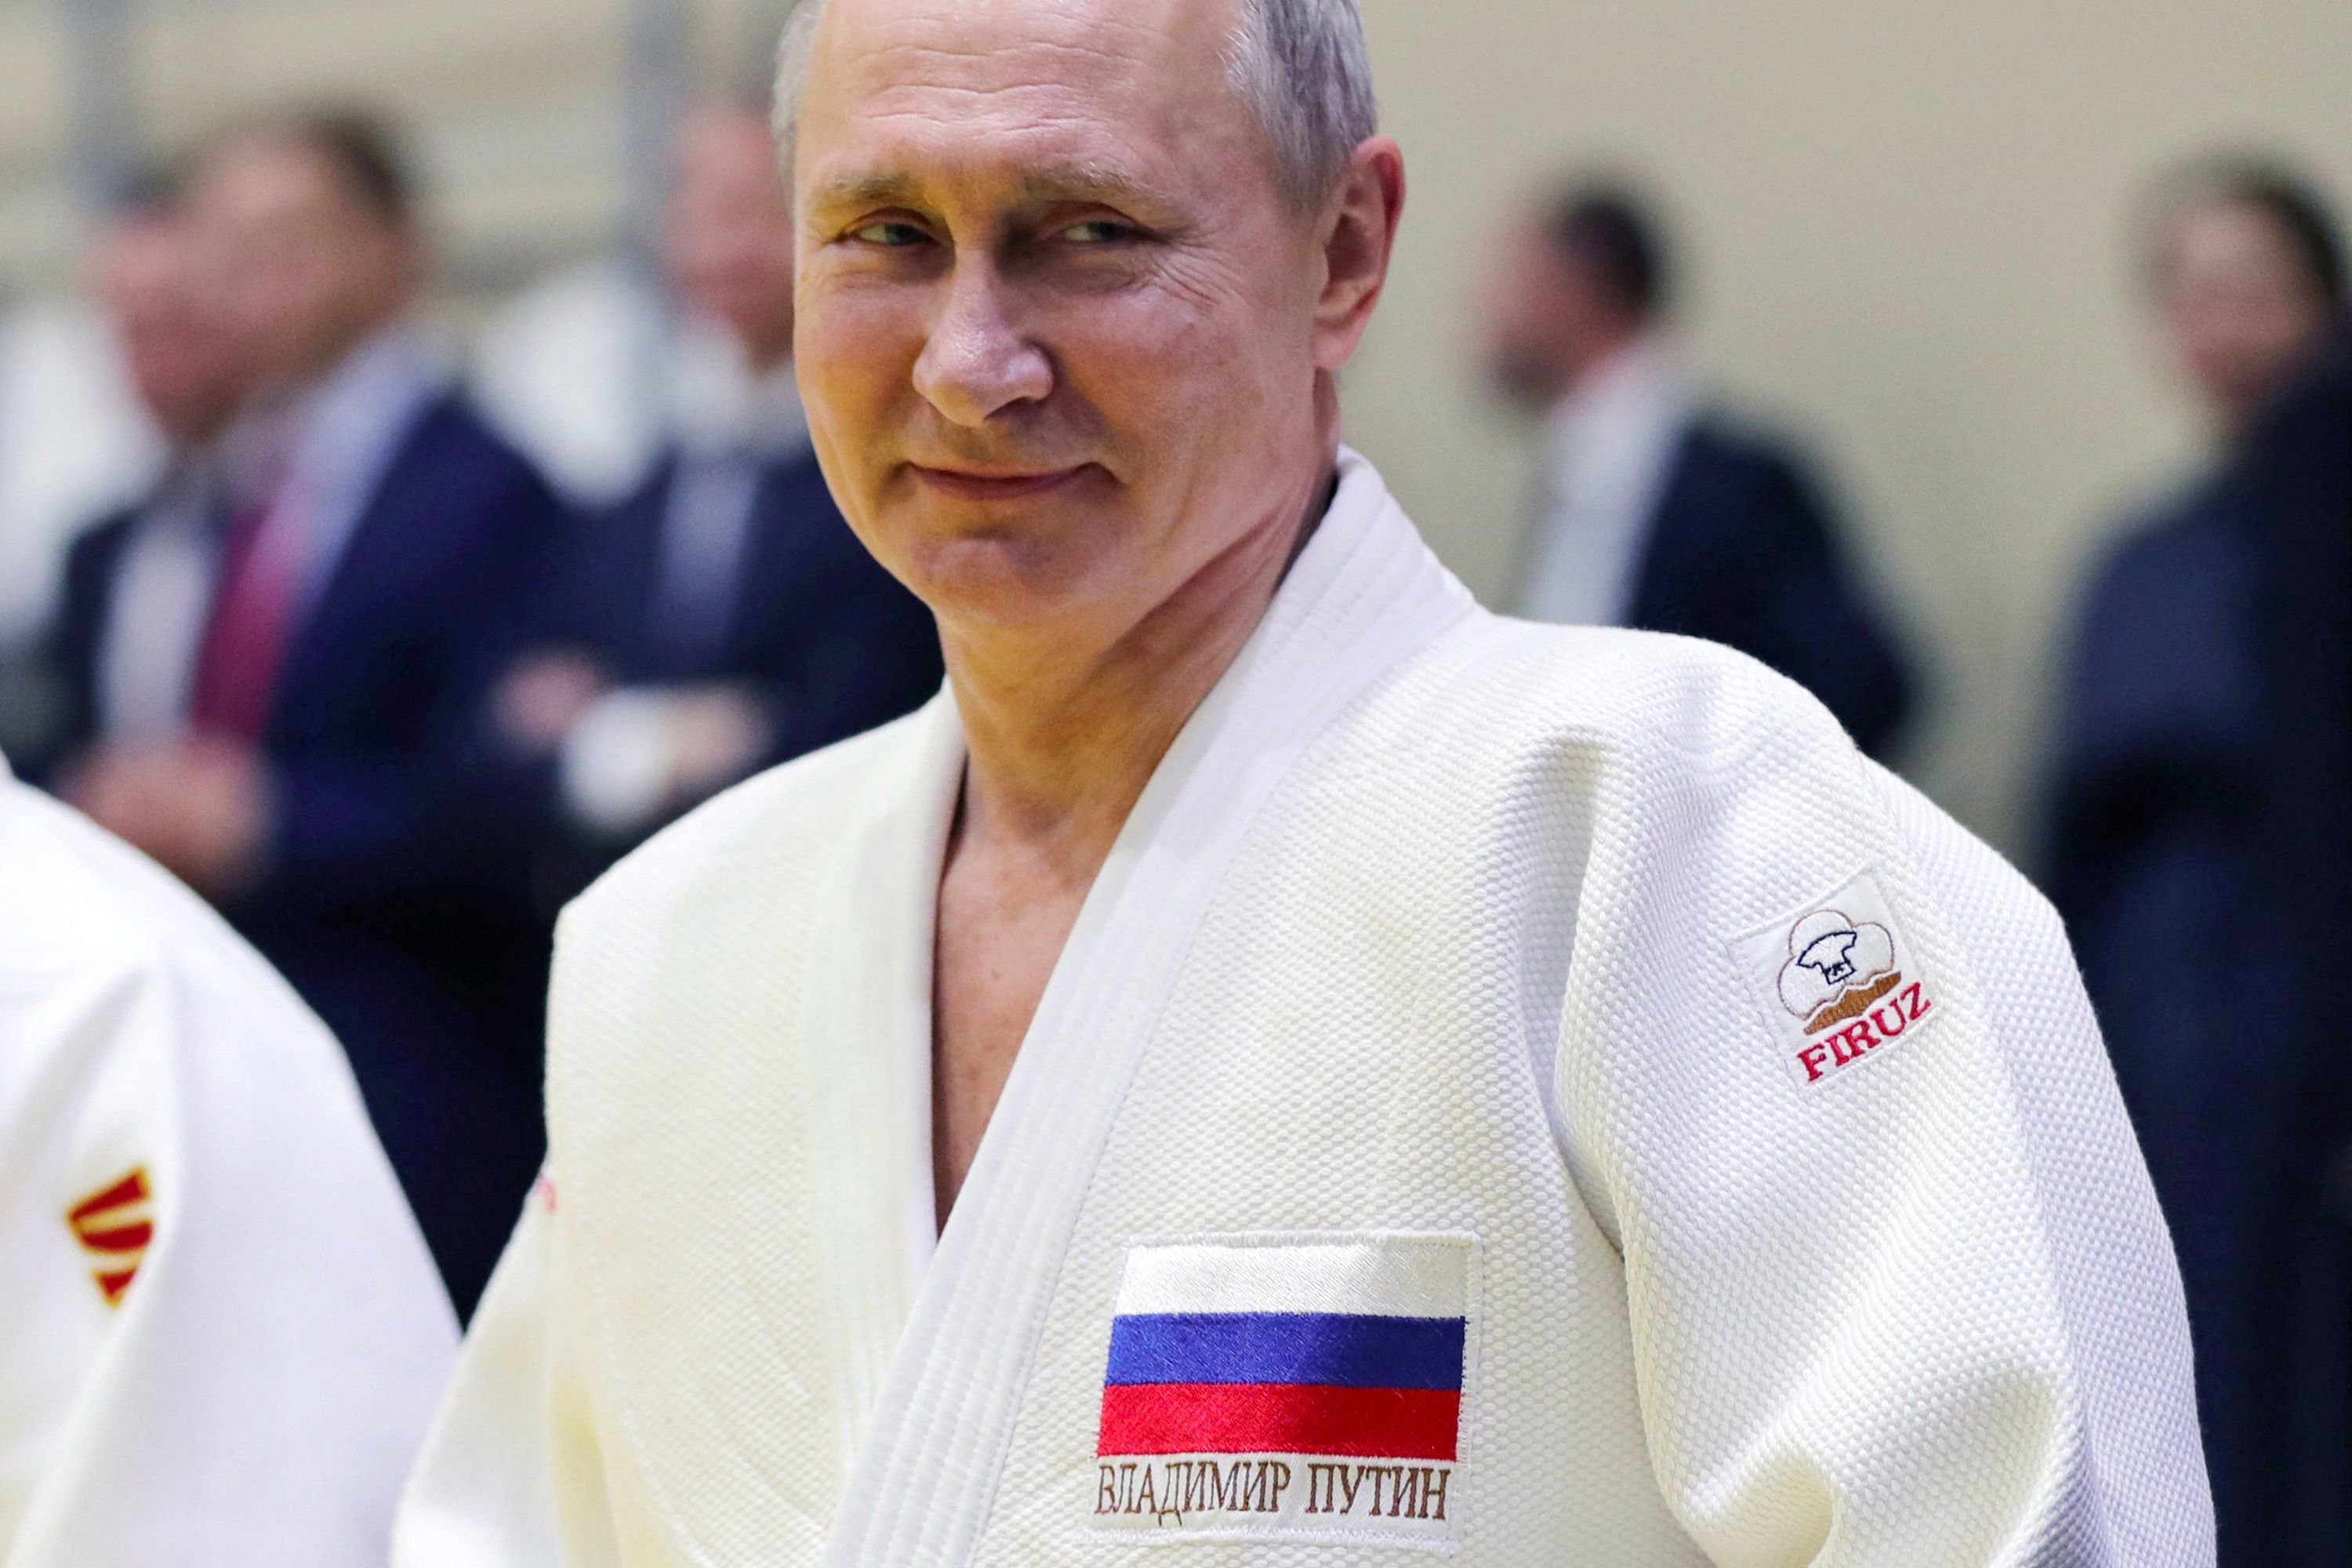 Vladimir Putin, en un entrenamiento del equipo nacional ruso de judo en febrero de 2019 en Sochi.